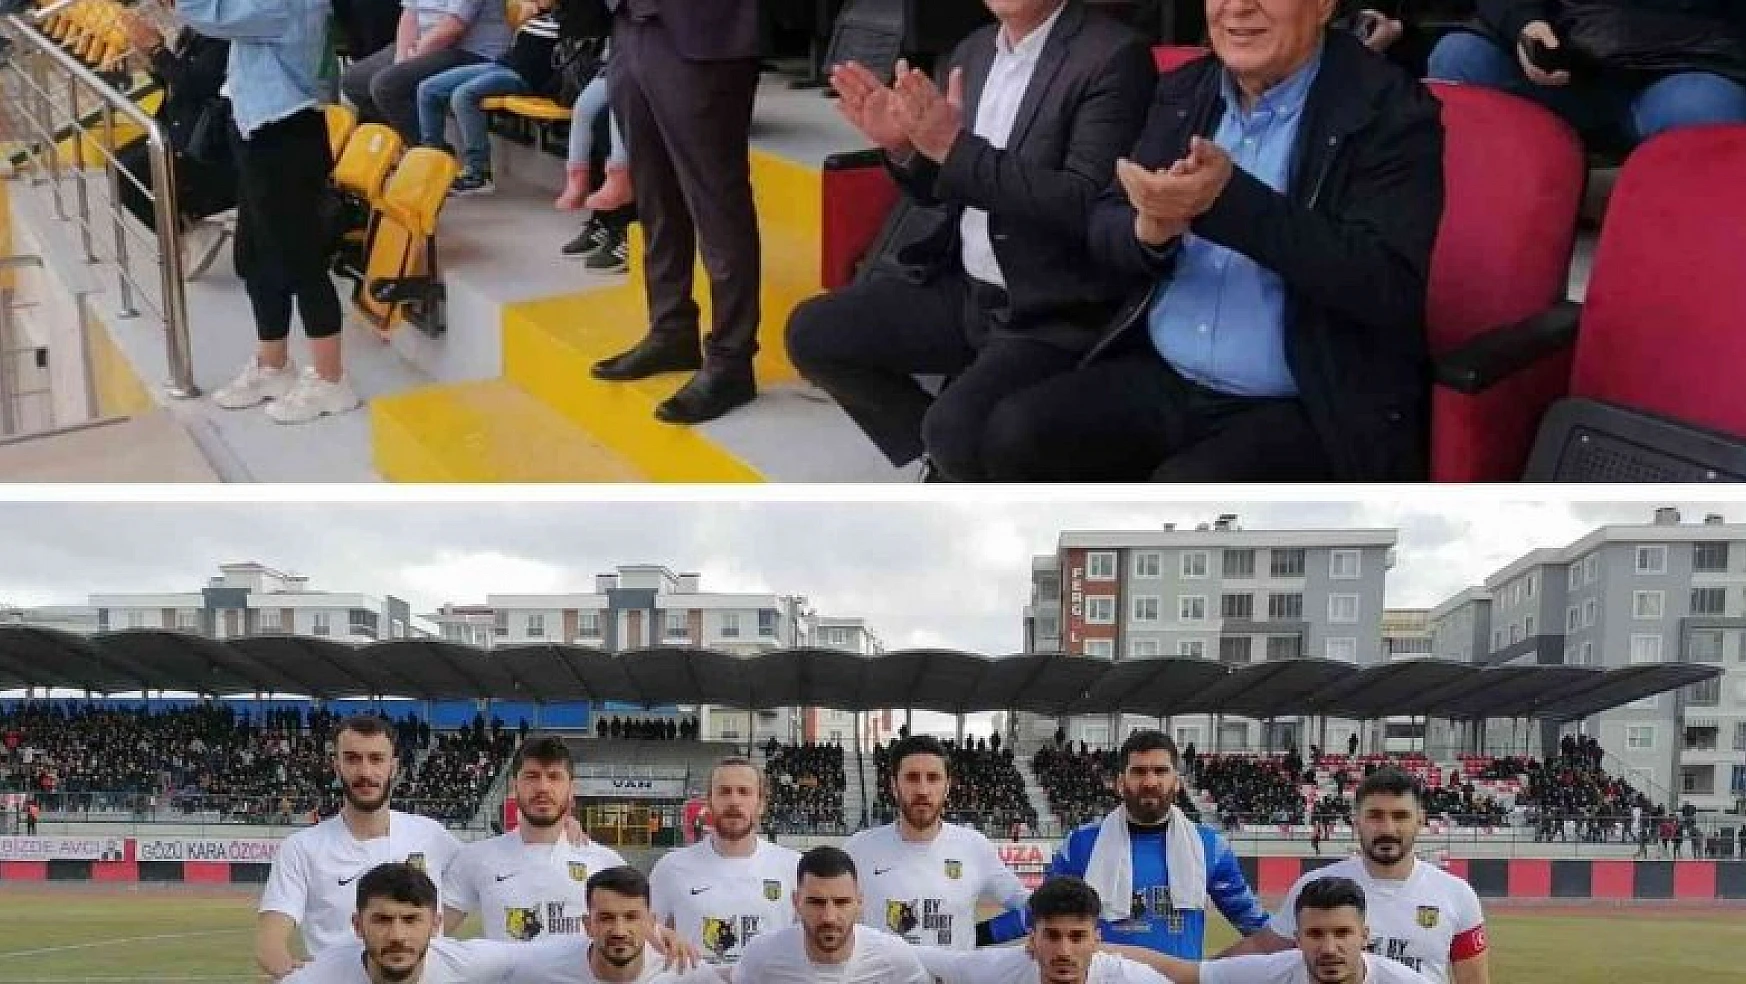 Bayburt Belediyesi'nden Bayburtspor'a şampiyonluk primi sözü